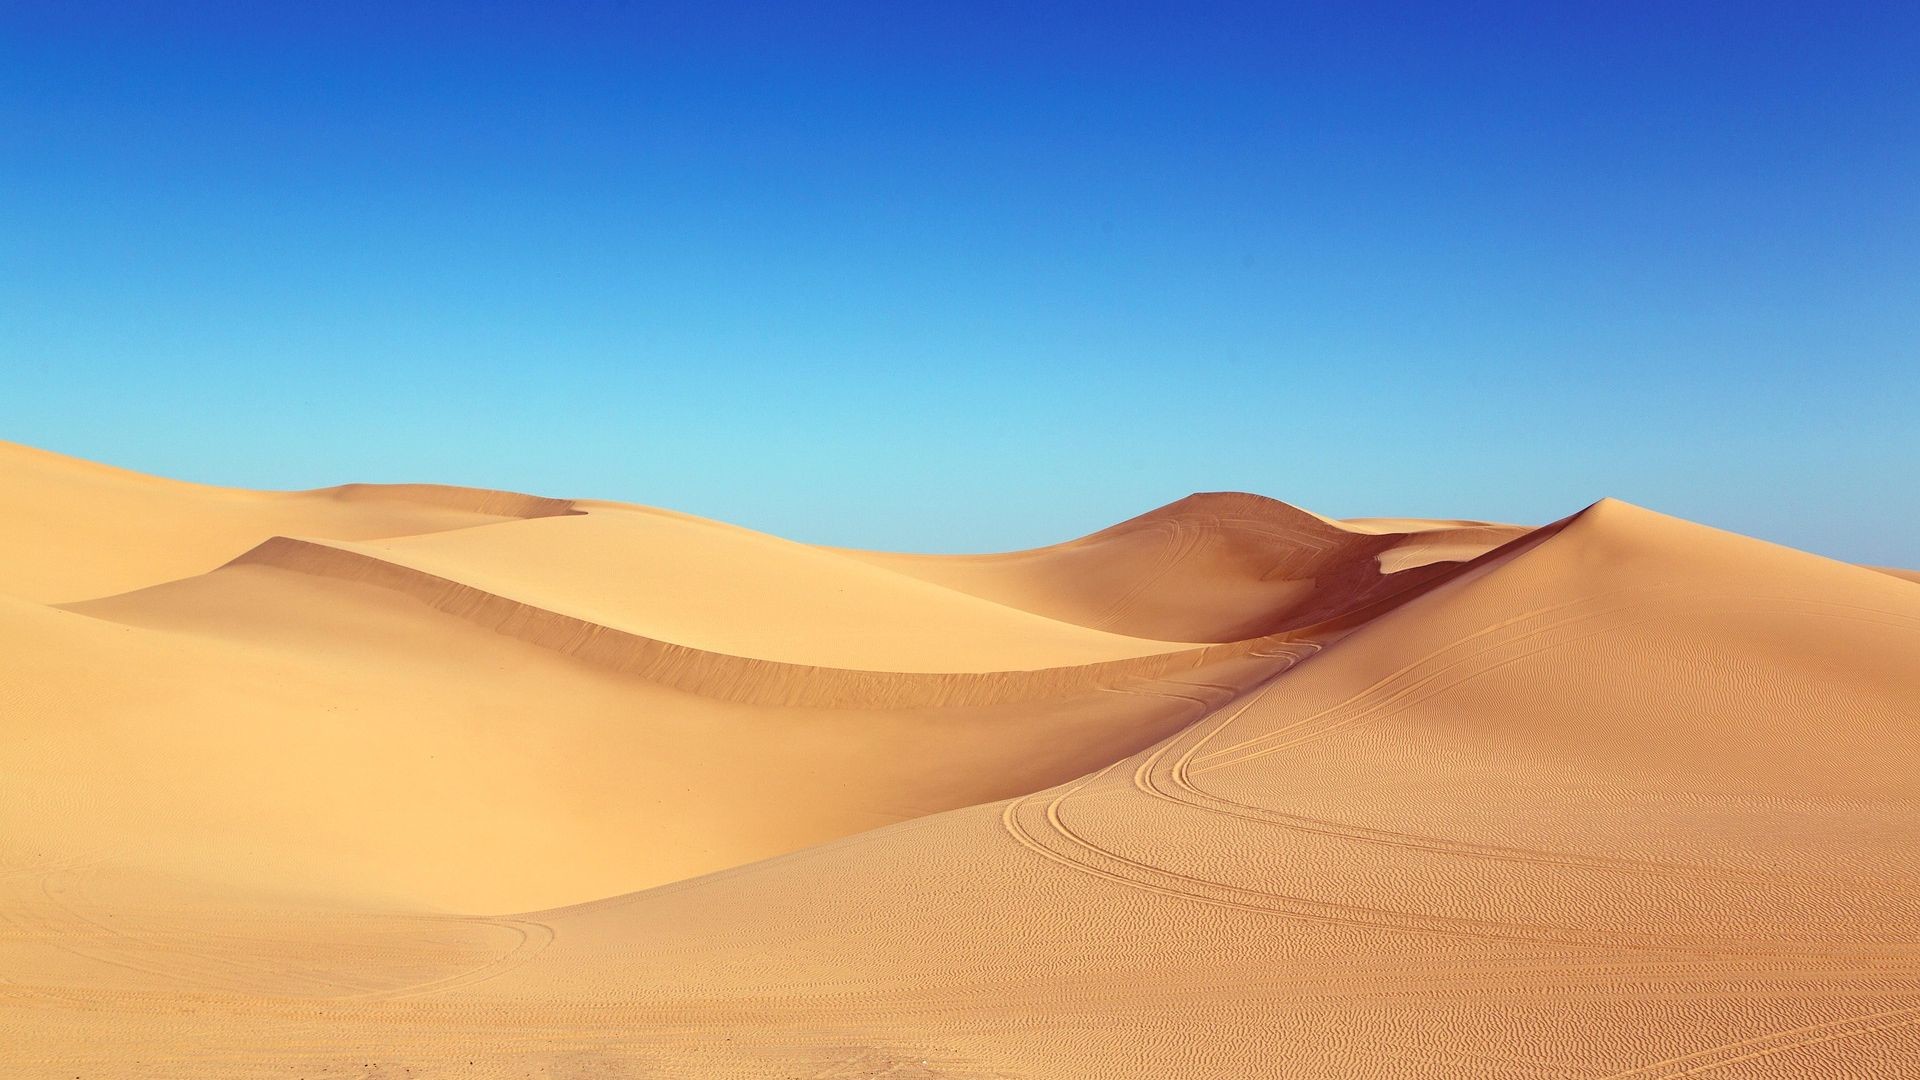 1920x1080 Algodones Dunes Desert Sand HD Wallpaper (px)